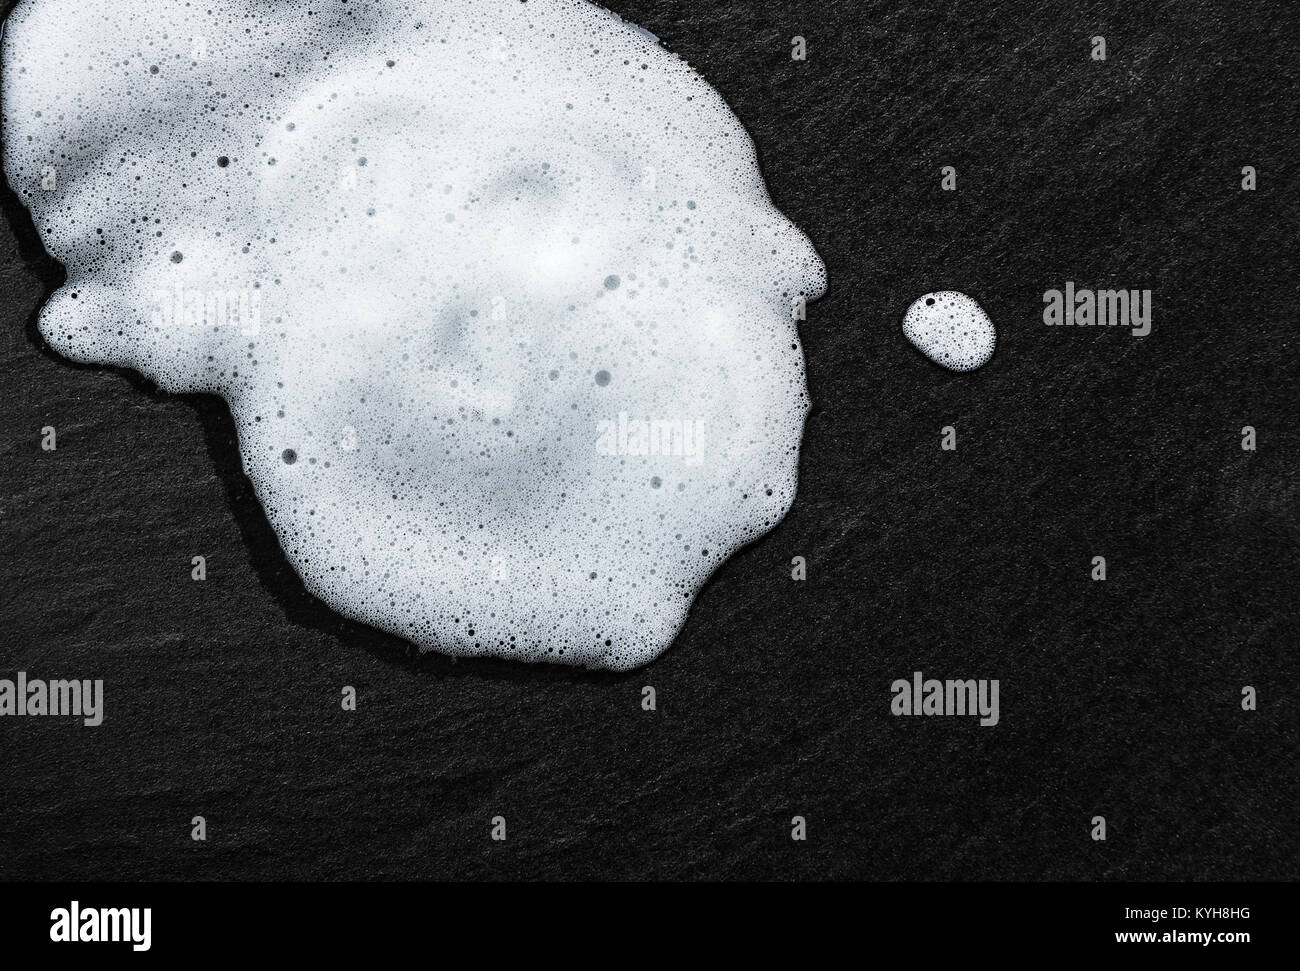 Weiss schaumige Seifenlauge auf Schwarze texturierte Bodenfliese, Blasen. Stockfoto